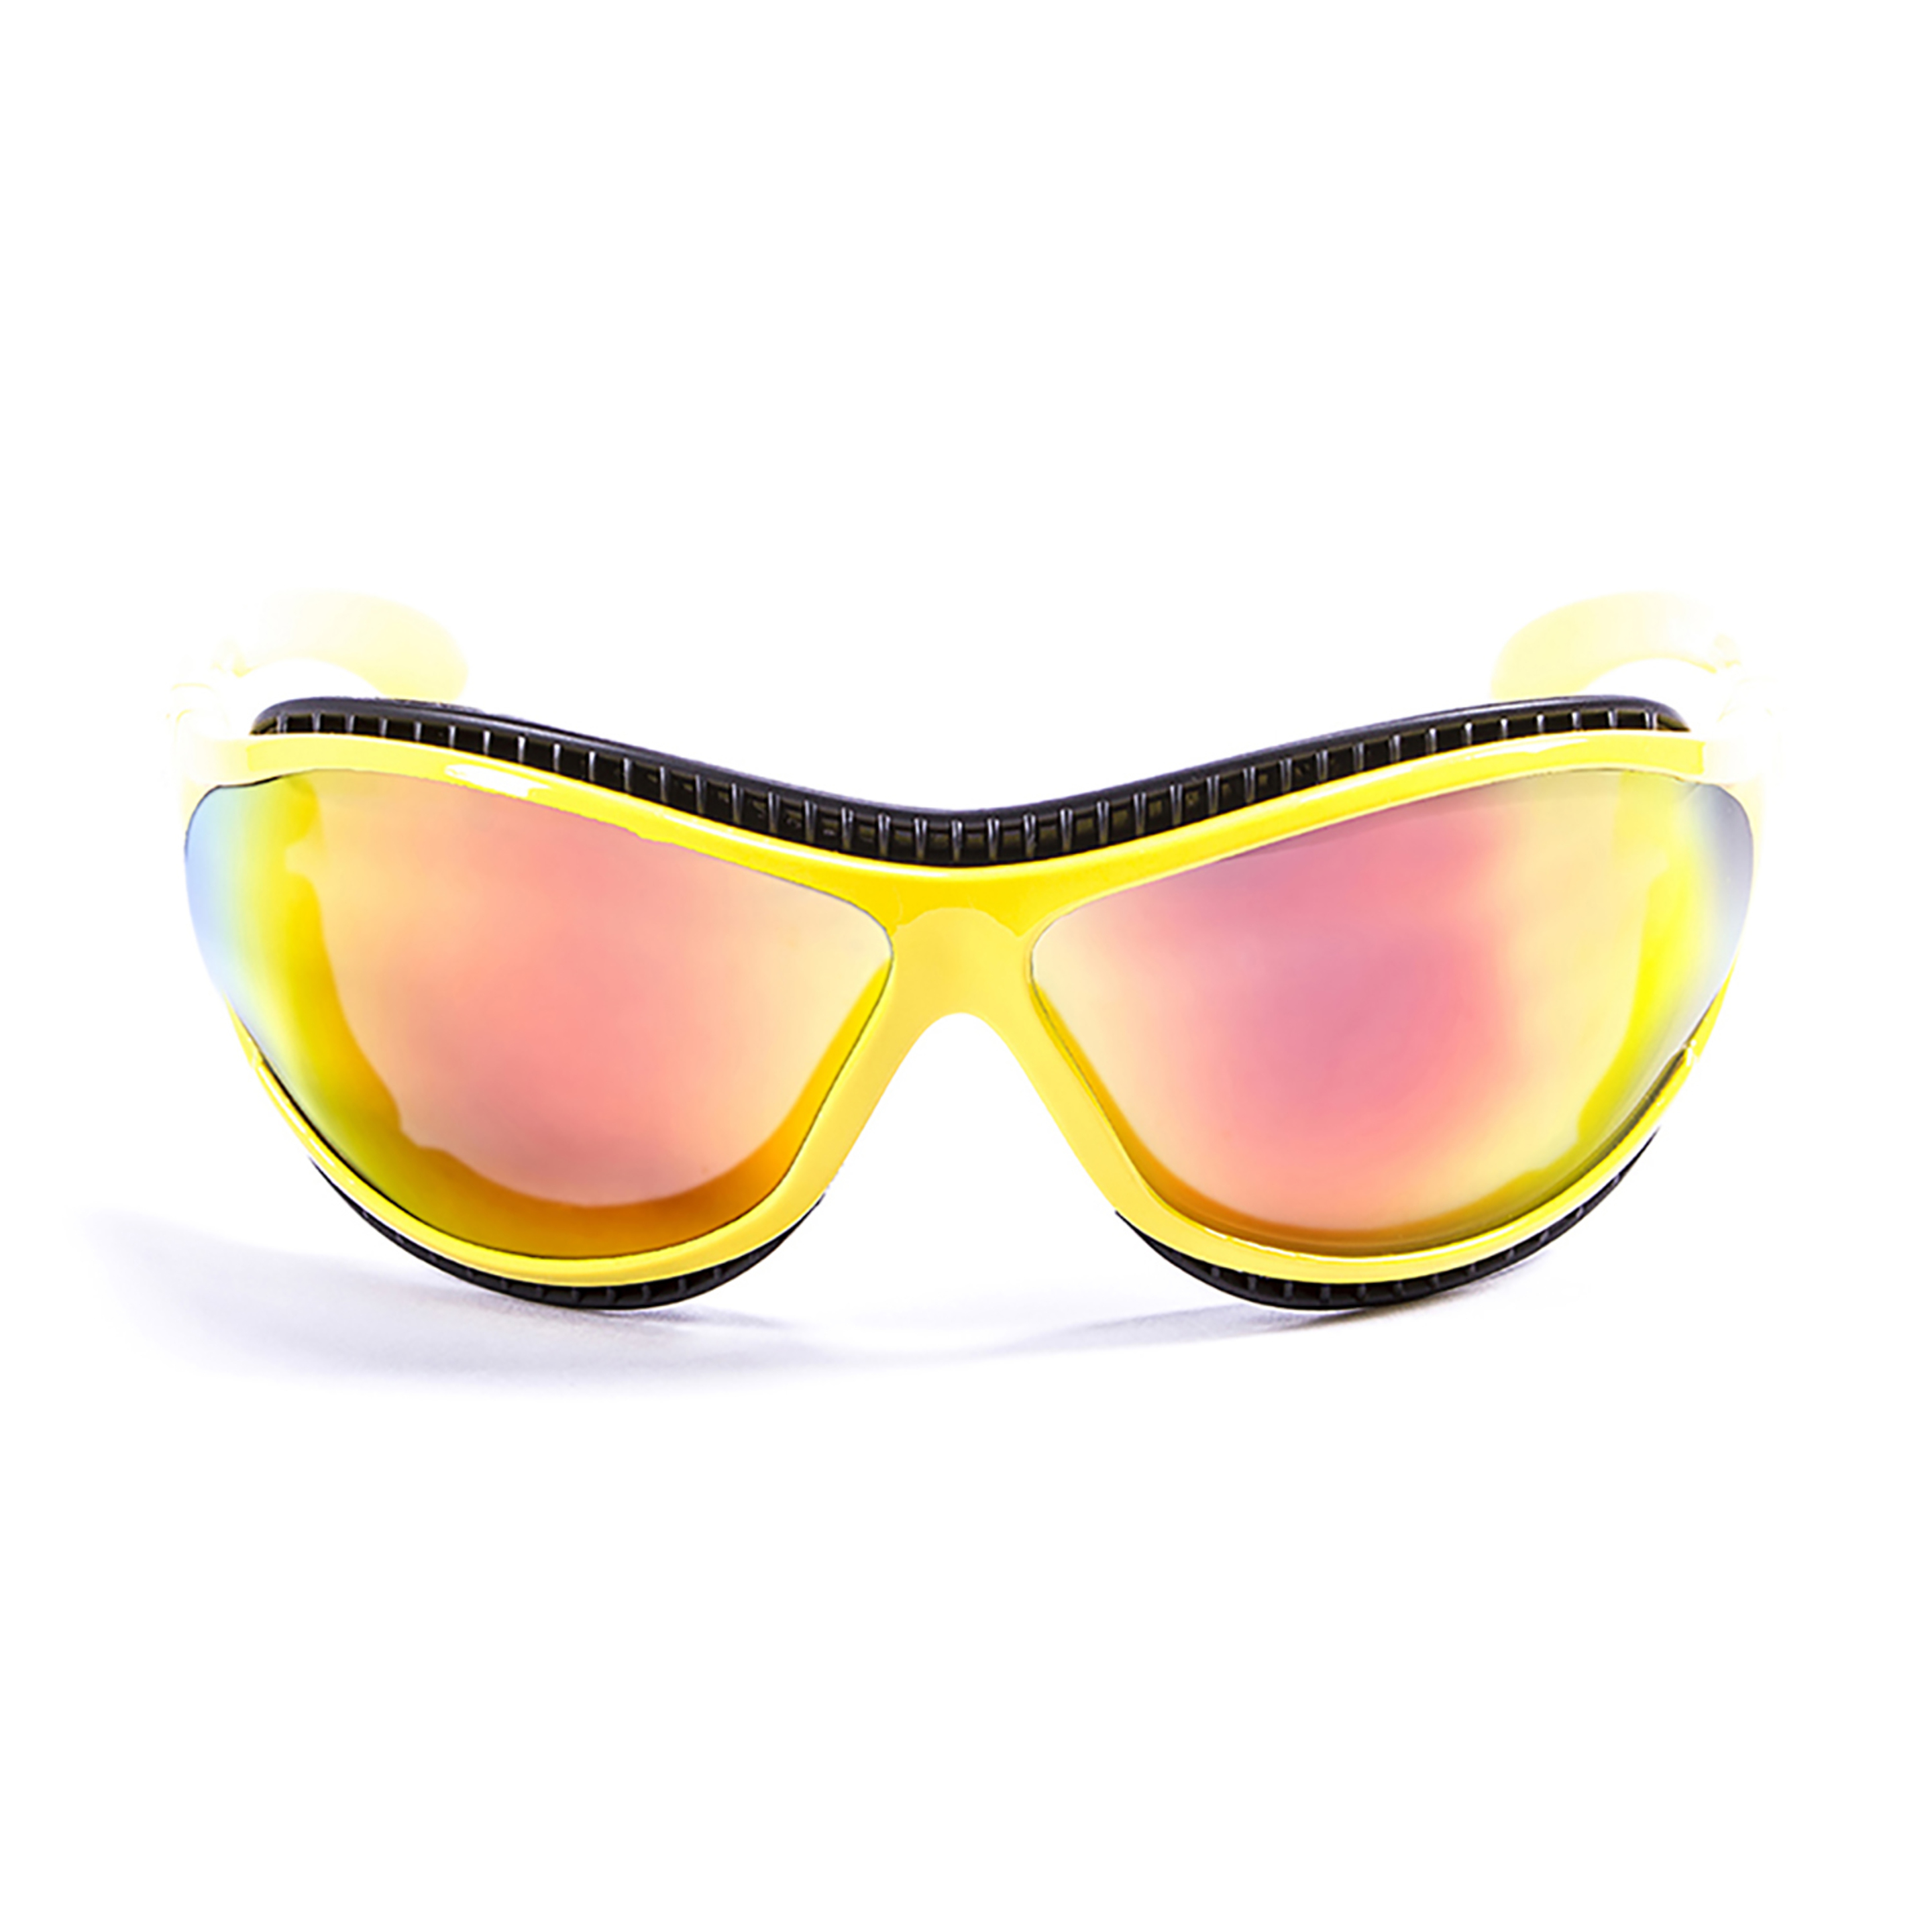 Gafas De Sol Técnicas Para La Práctica De Deportes De Agua Tierra De Fuego Ocean Sunglasses - amarillo - 